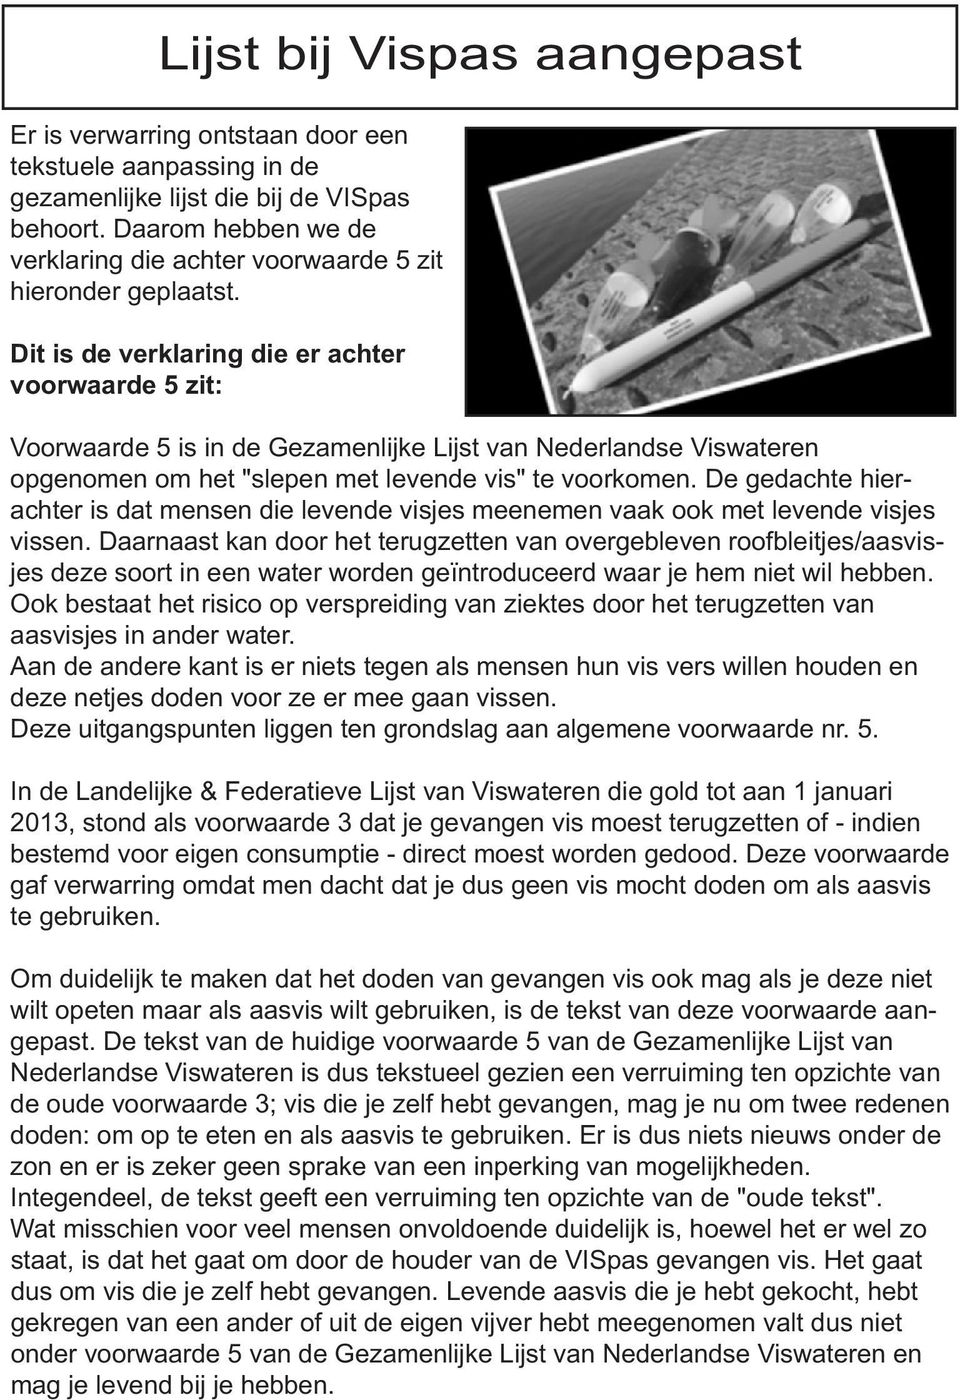 Dit is de verklaring die er achter voorwaarde 5 zit: Voorwaarde 5 is in de Gezamenlijke Lijst van Nederlandse Viswateren opgenomen om het "slepen met levende vis" te voorkomen.